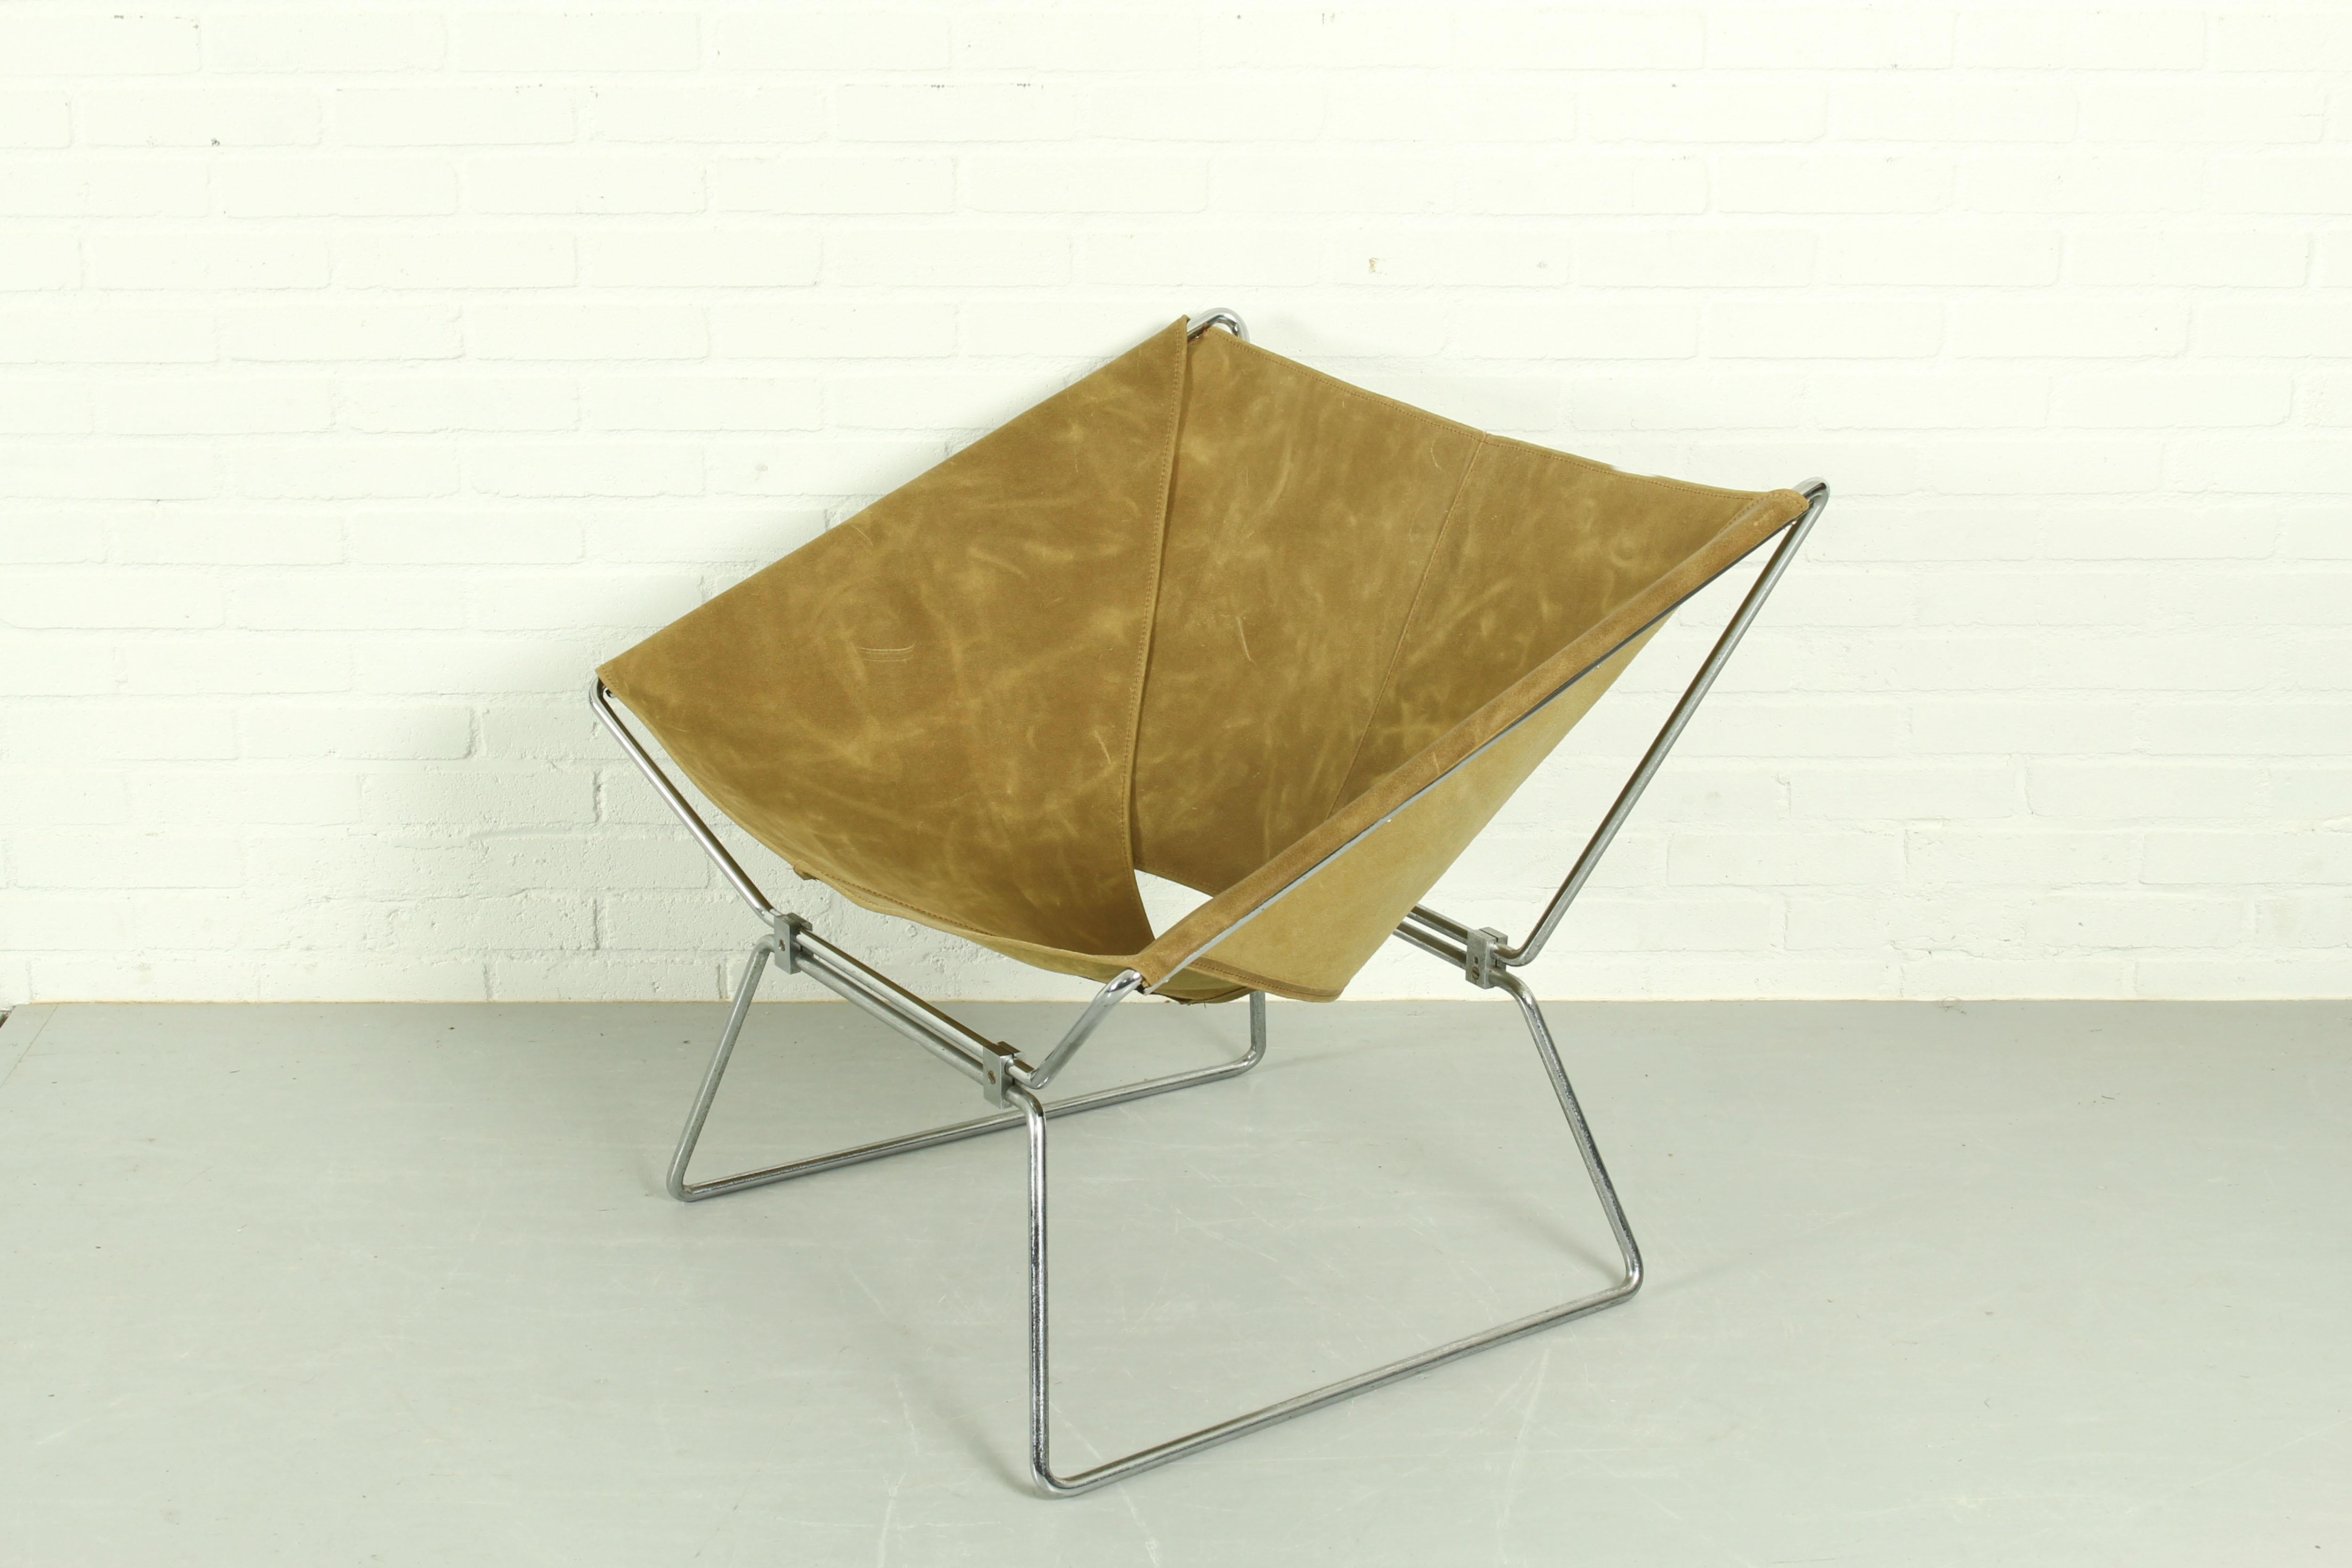 Magnifique chaise Anneau conçue par Pierre Paulin et produite par le fabricant néerlandais AP Polak. Ce modèle est également connu sous le nom d'AP 14. La belle armature métallique, presque architecturale, soutient l'écharpe en cuir. Nouvelle